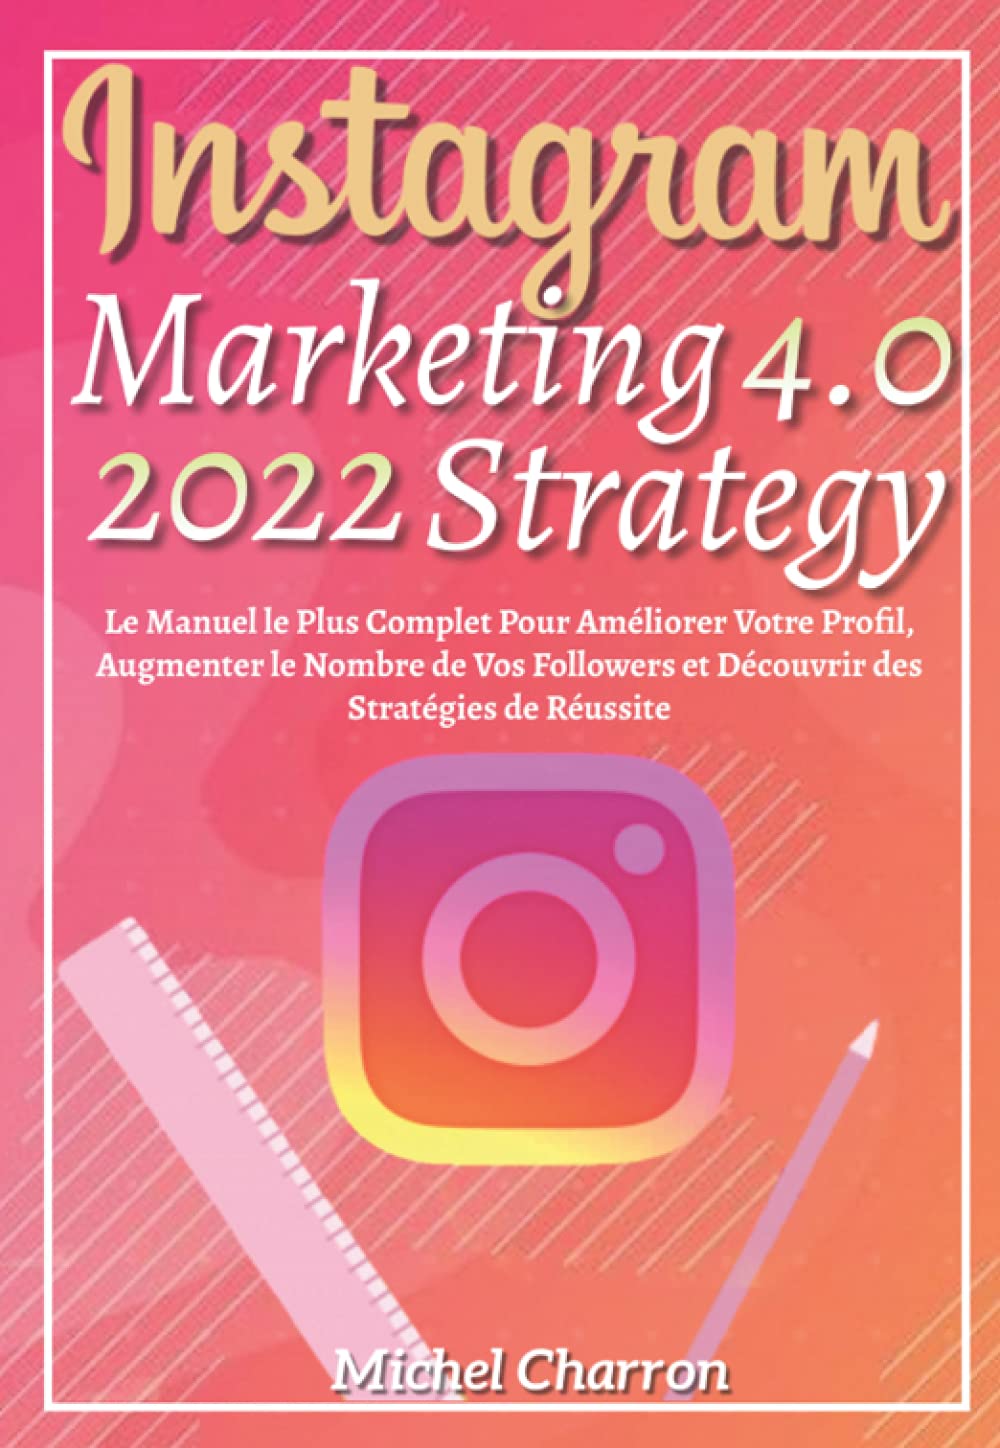 Instagram Marketing-Strategy 4.0; Le Manuel le plus Complet pour Améliorer Votre Profil, Augmenter le Nombre de Vos Followers et Découvrir des Stratégies de Réussite